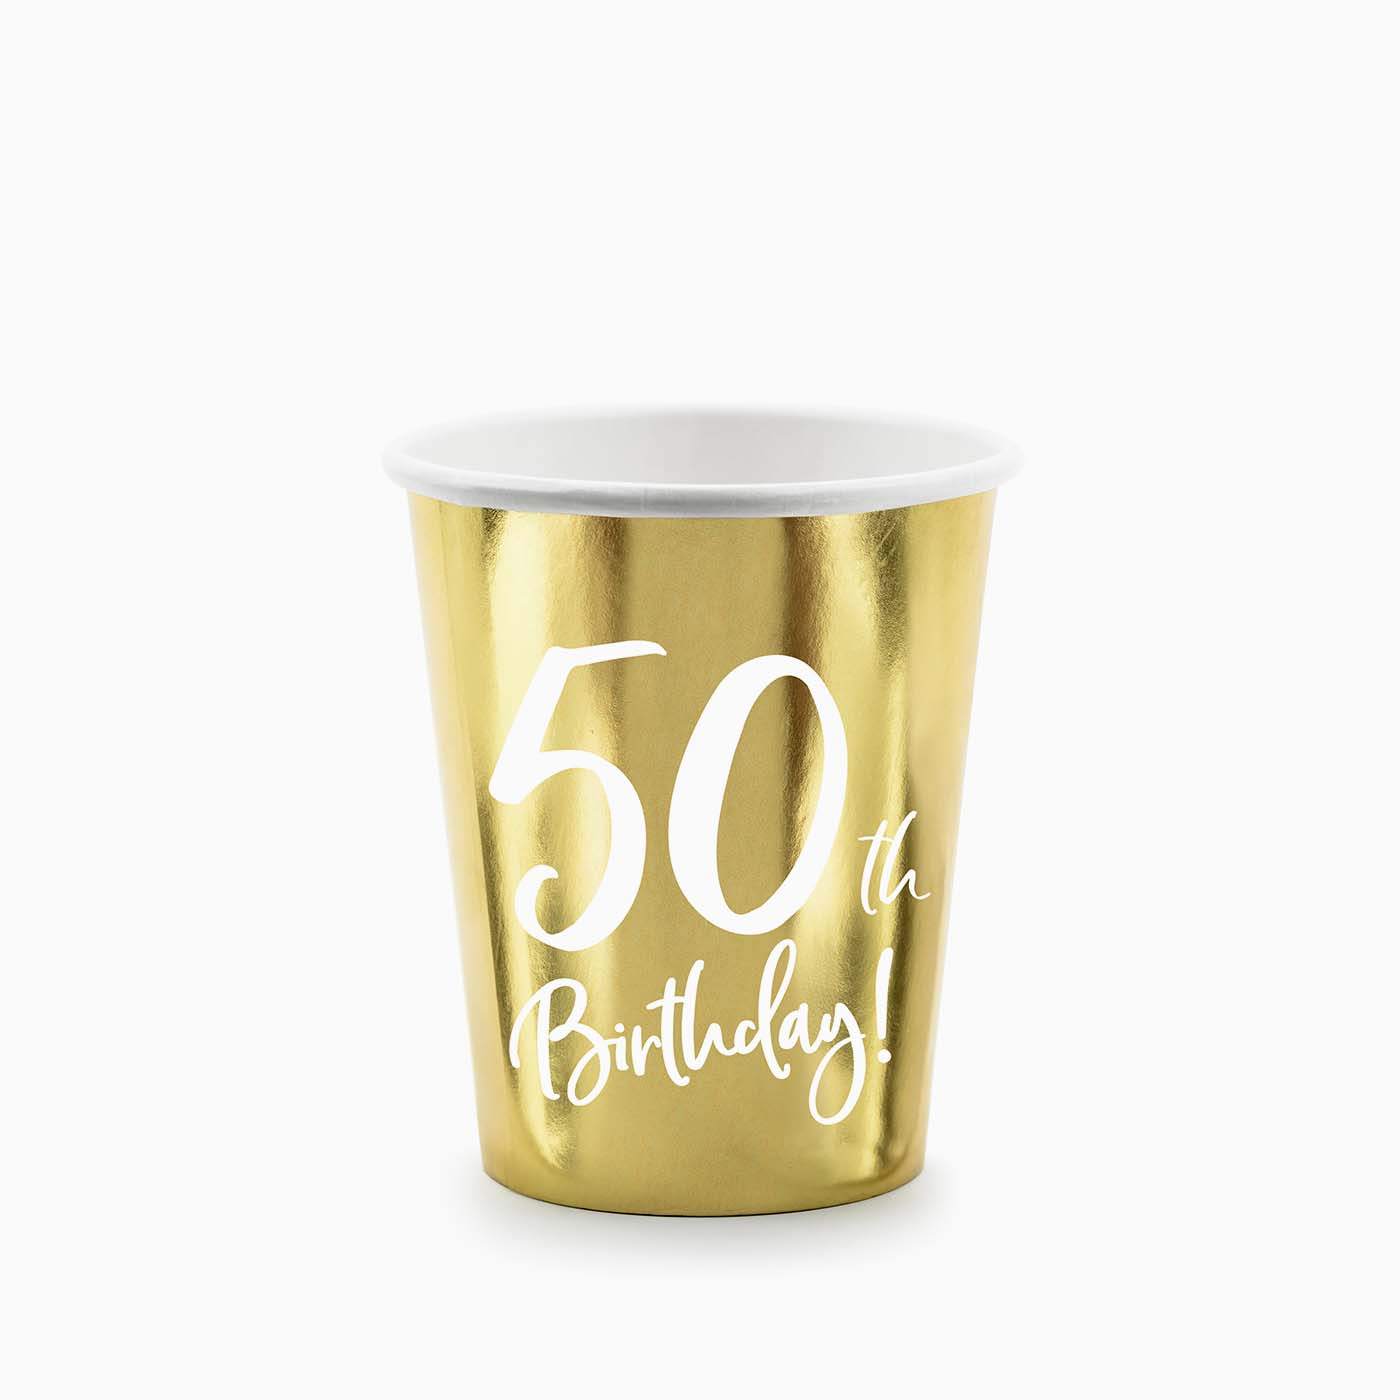 Vaso Cartón Oro "50th Birthday"